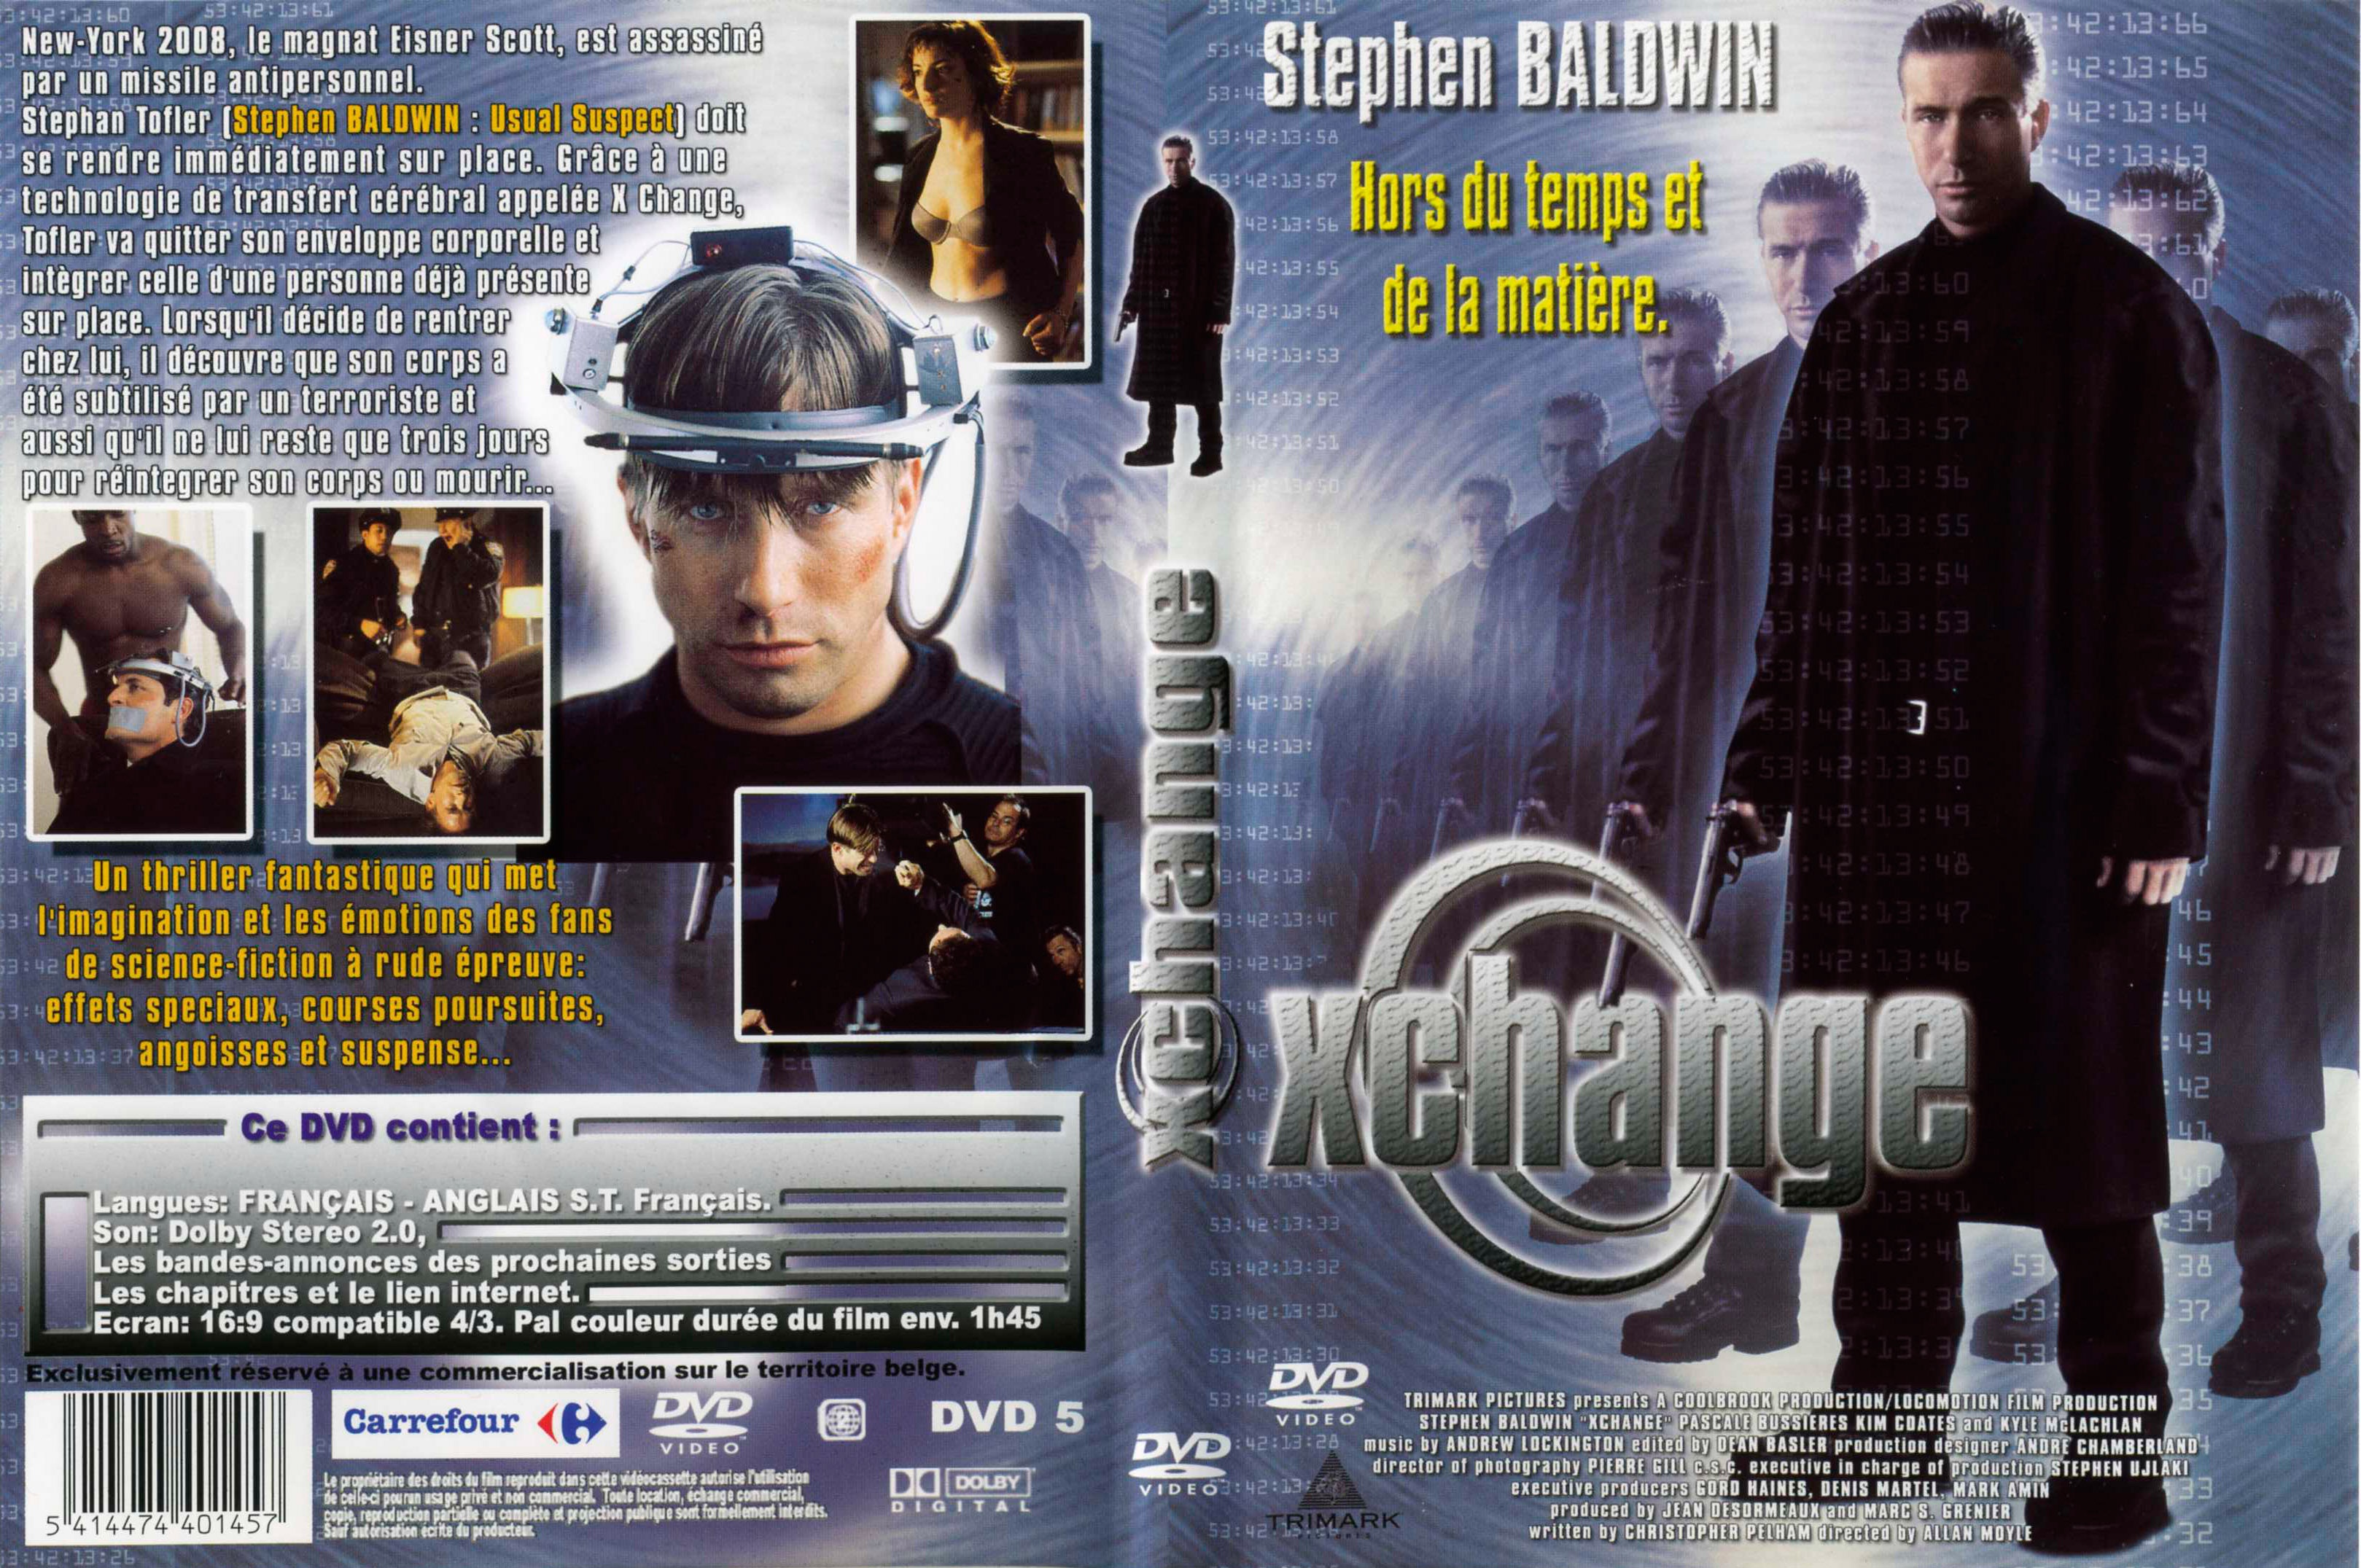 Jaquette DVD Xchange